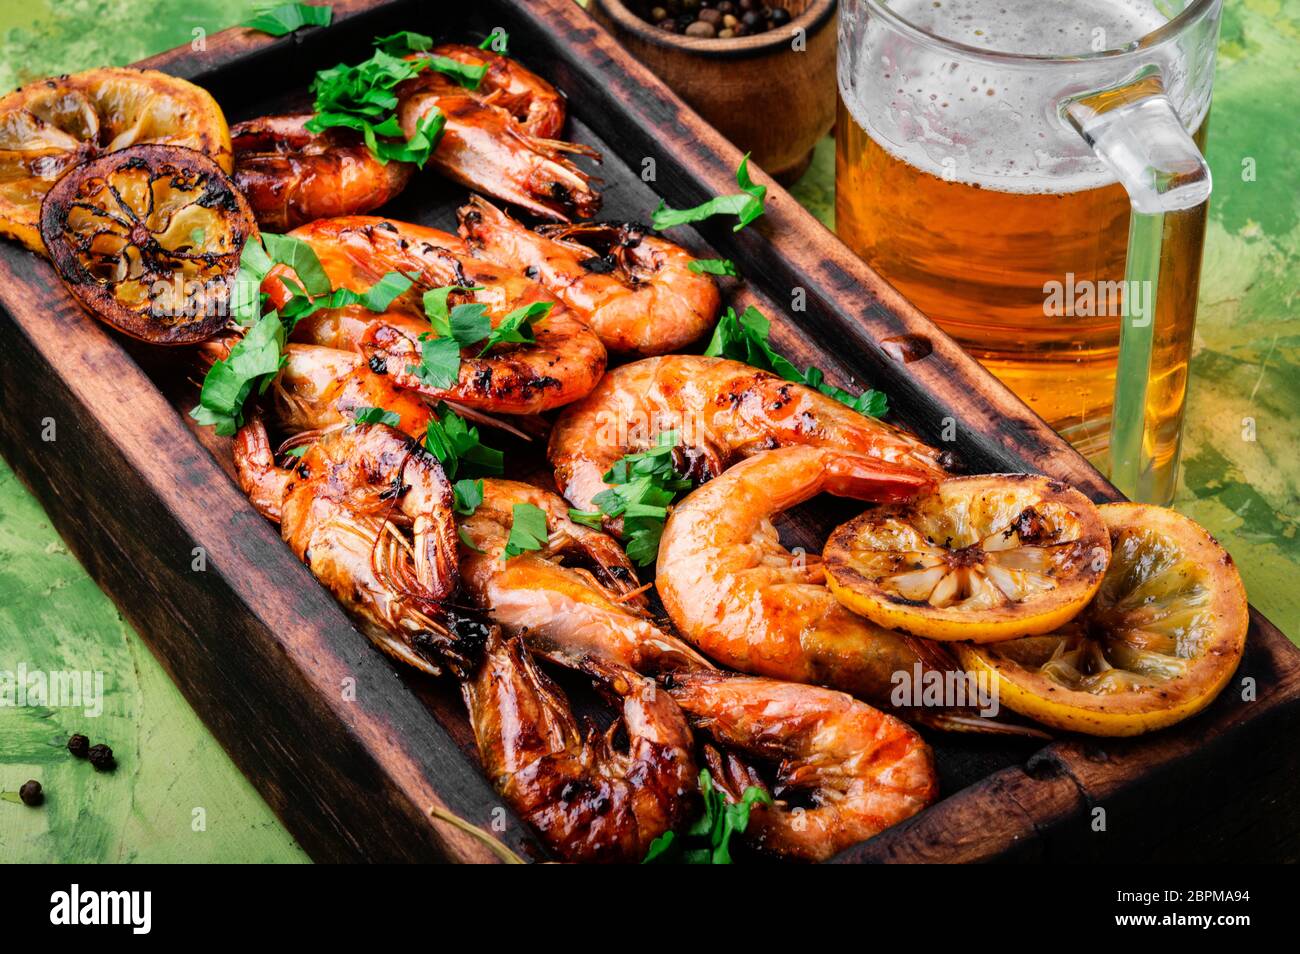 Roasted shrimps and lemon on cutting board.Seafood, shelfish Stock Photo